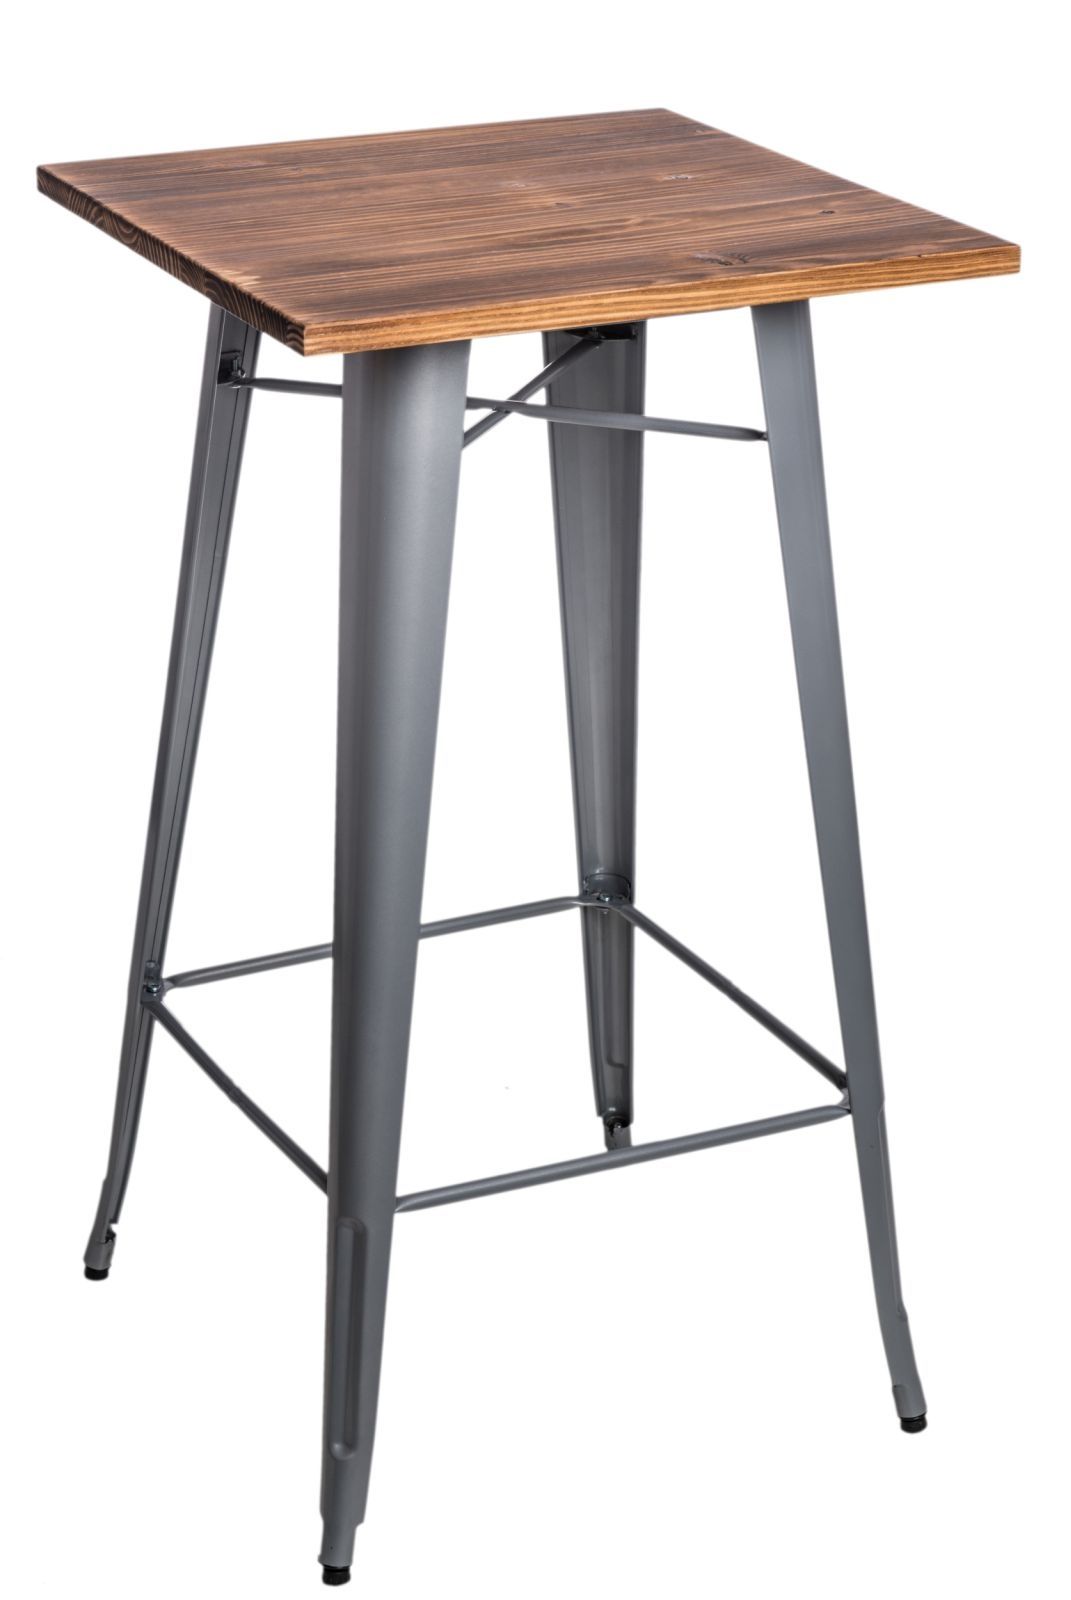  Stôl barový Paris Wood strieborný sosna - mobler.sk